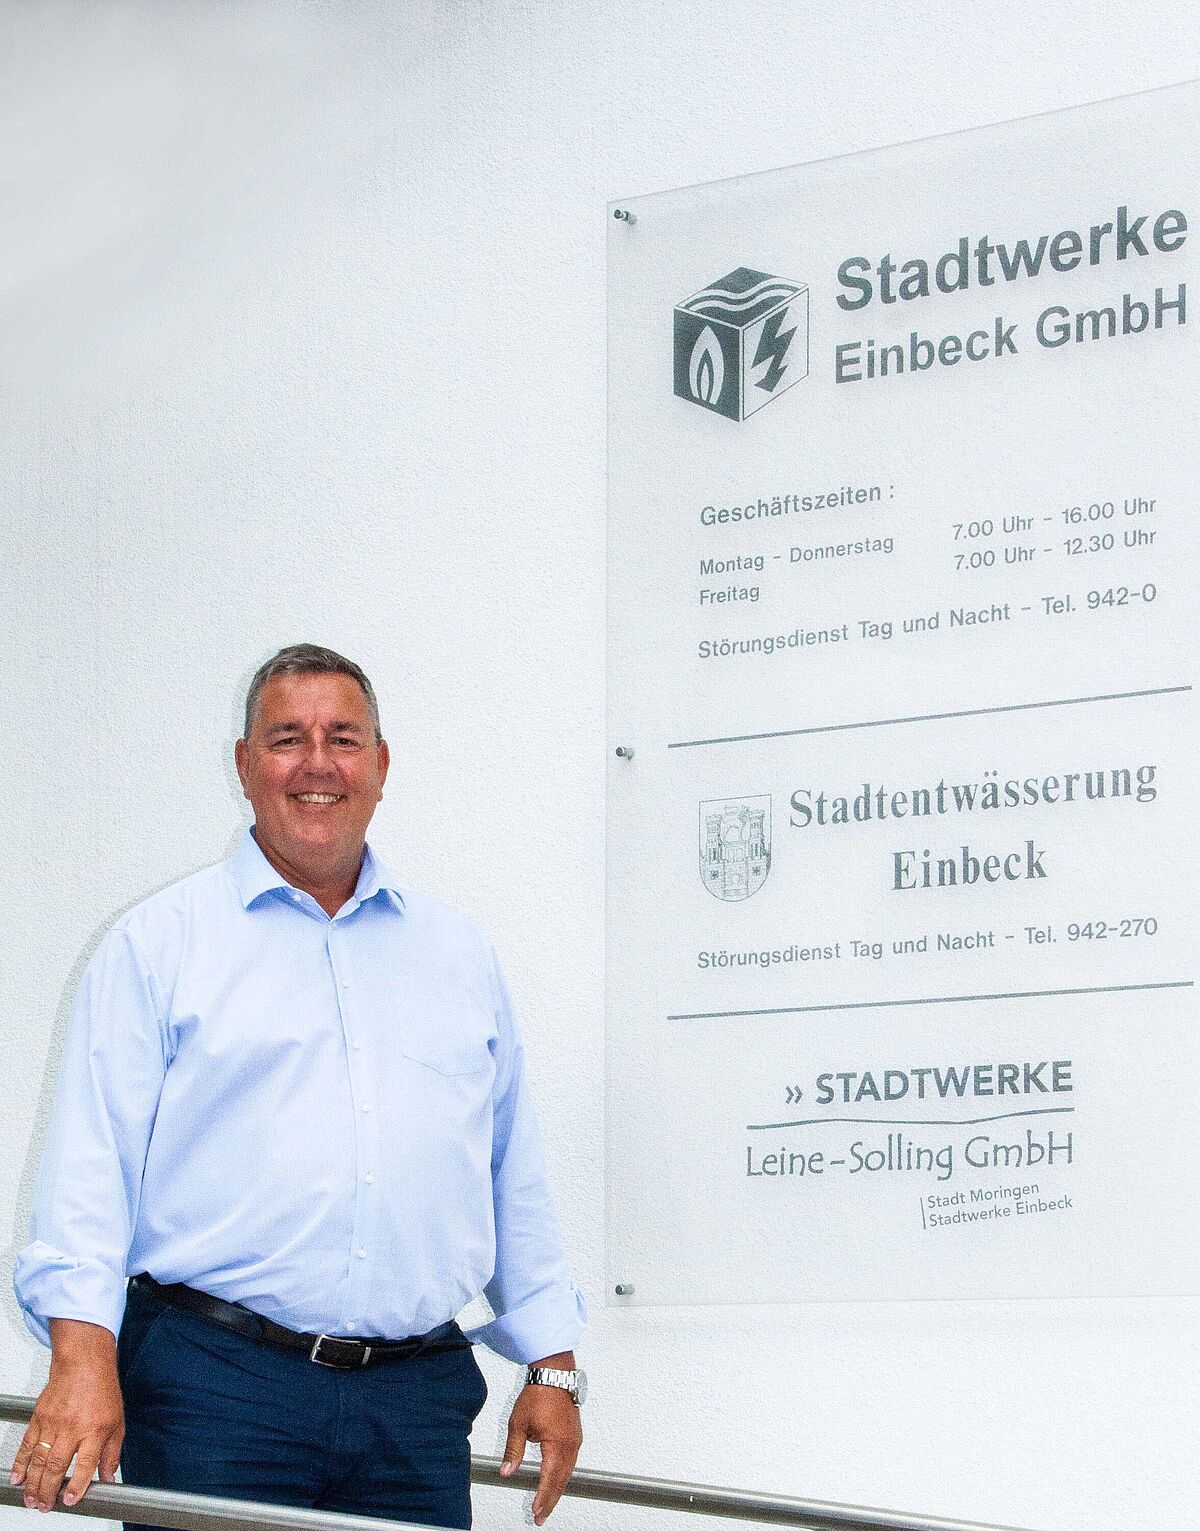 ©Stadtwerke Einbeck GmbH